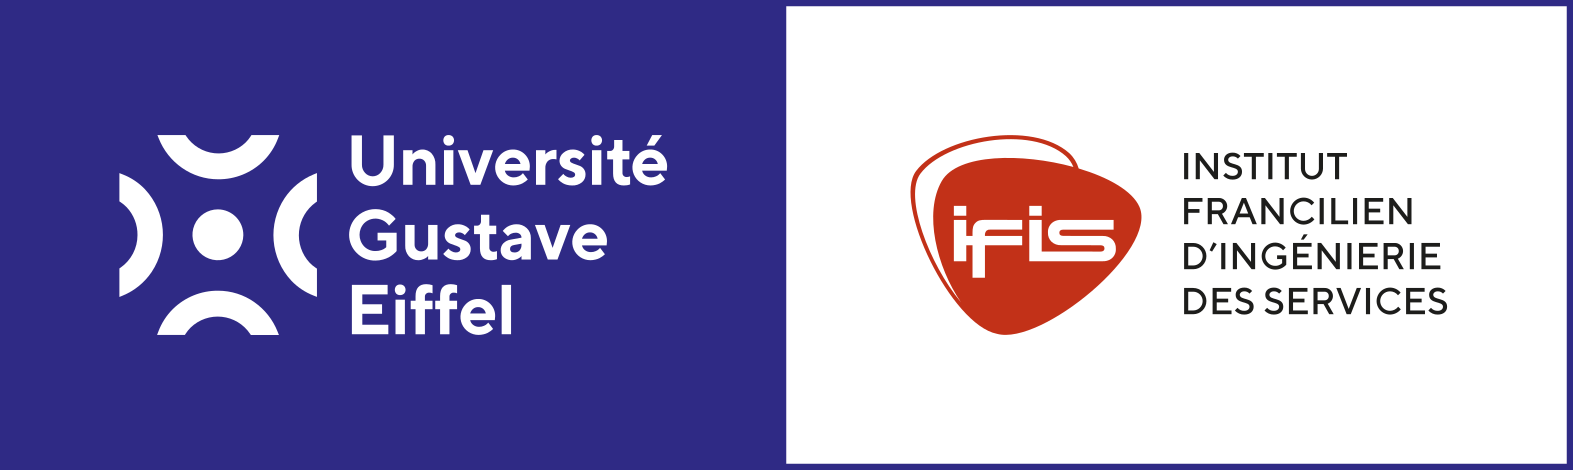 Institut Francilien d'ingénierie des Services (IFIS)